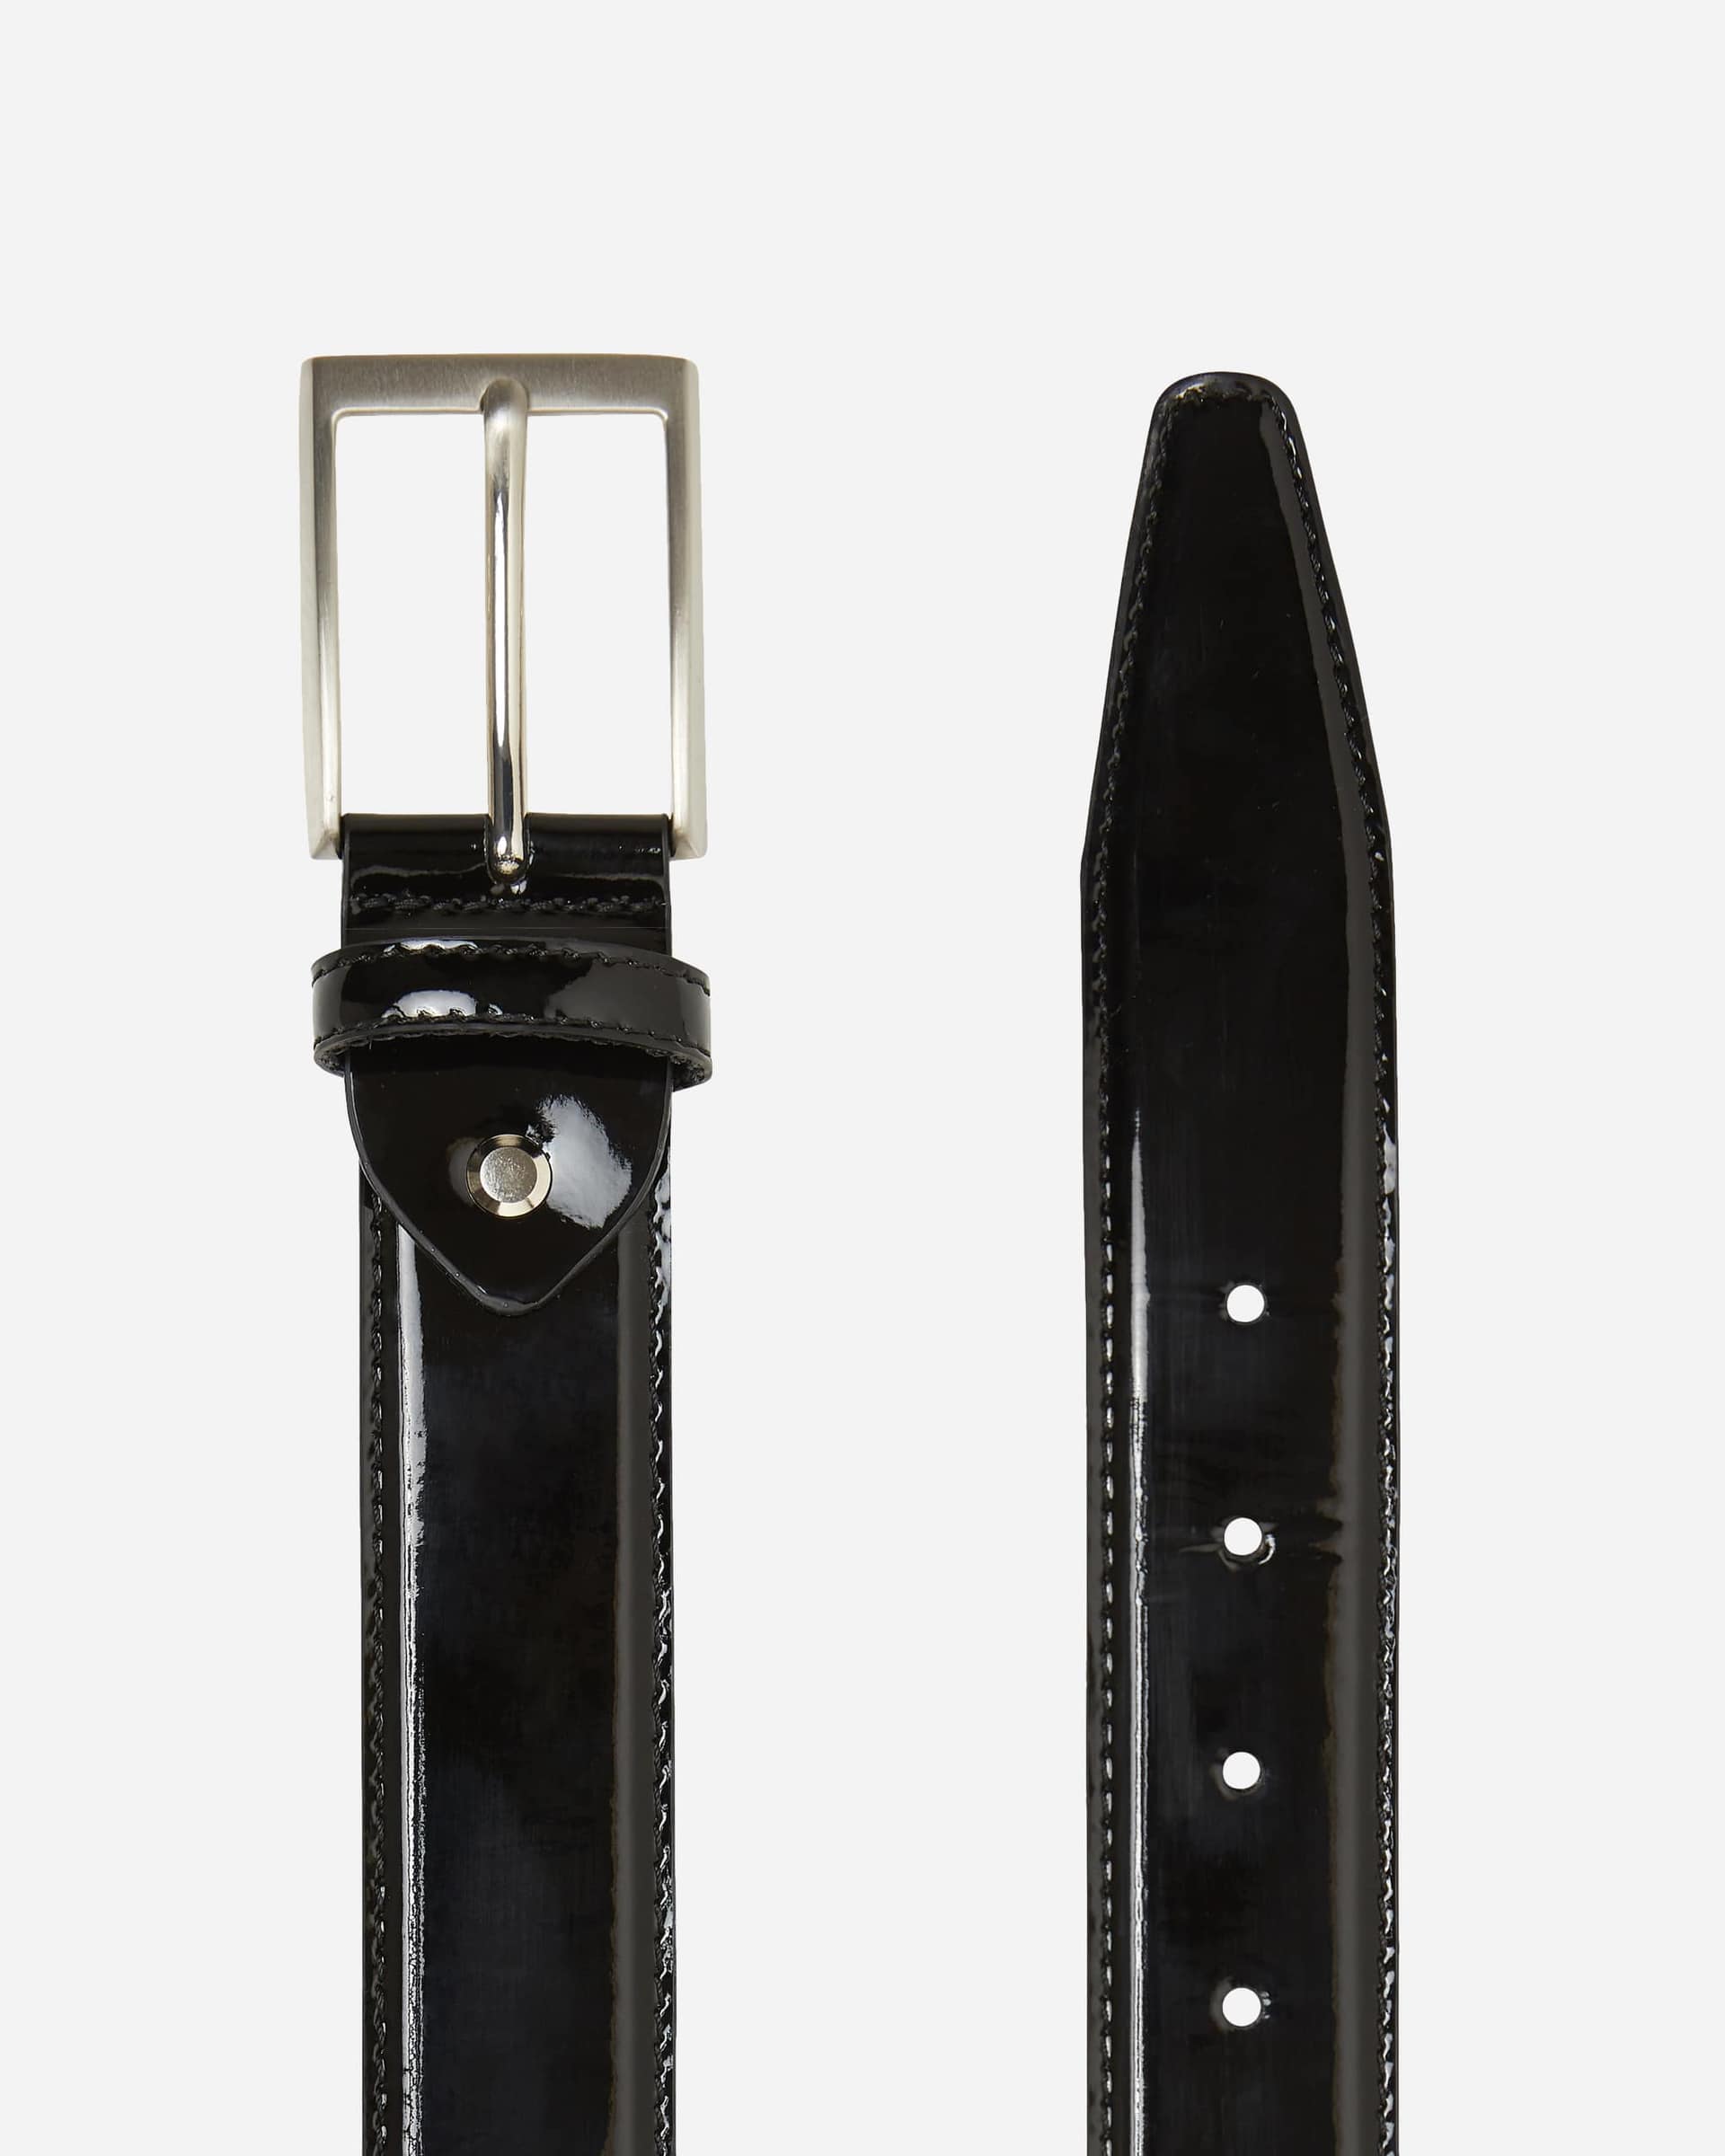 Macquarie Belt - Men's Leather Belts at Menzclub